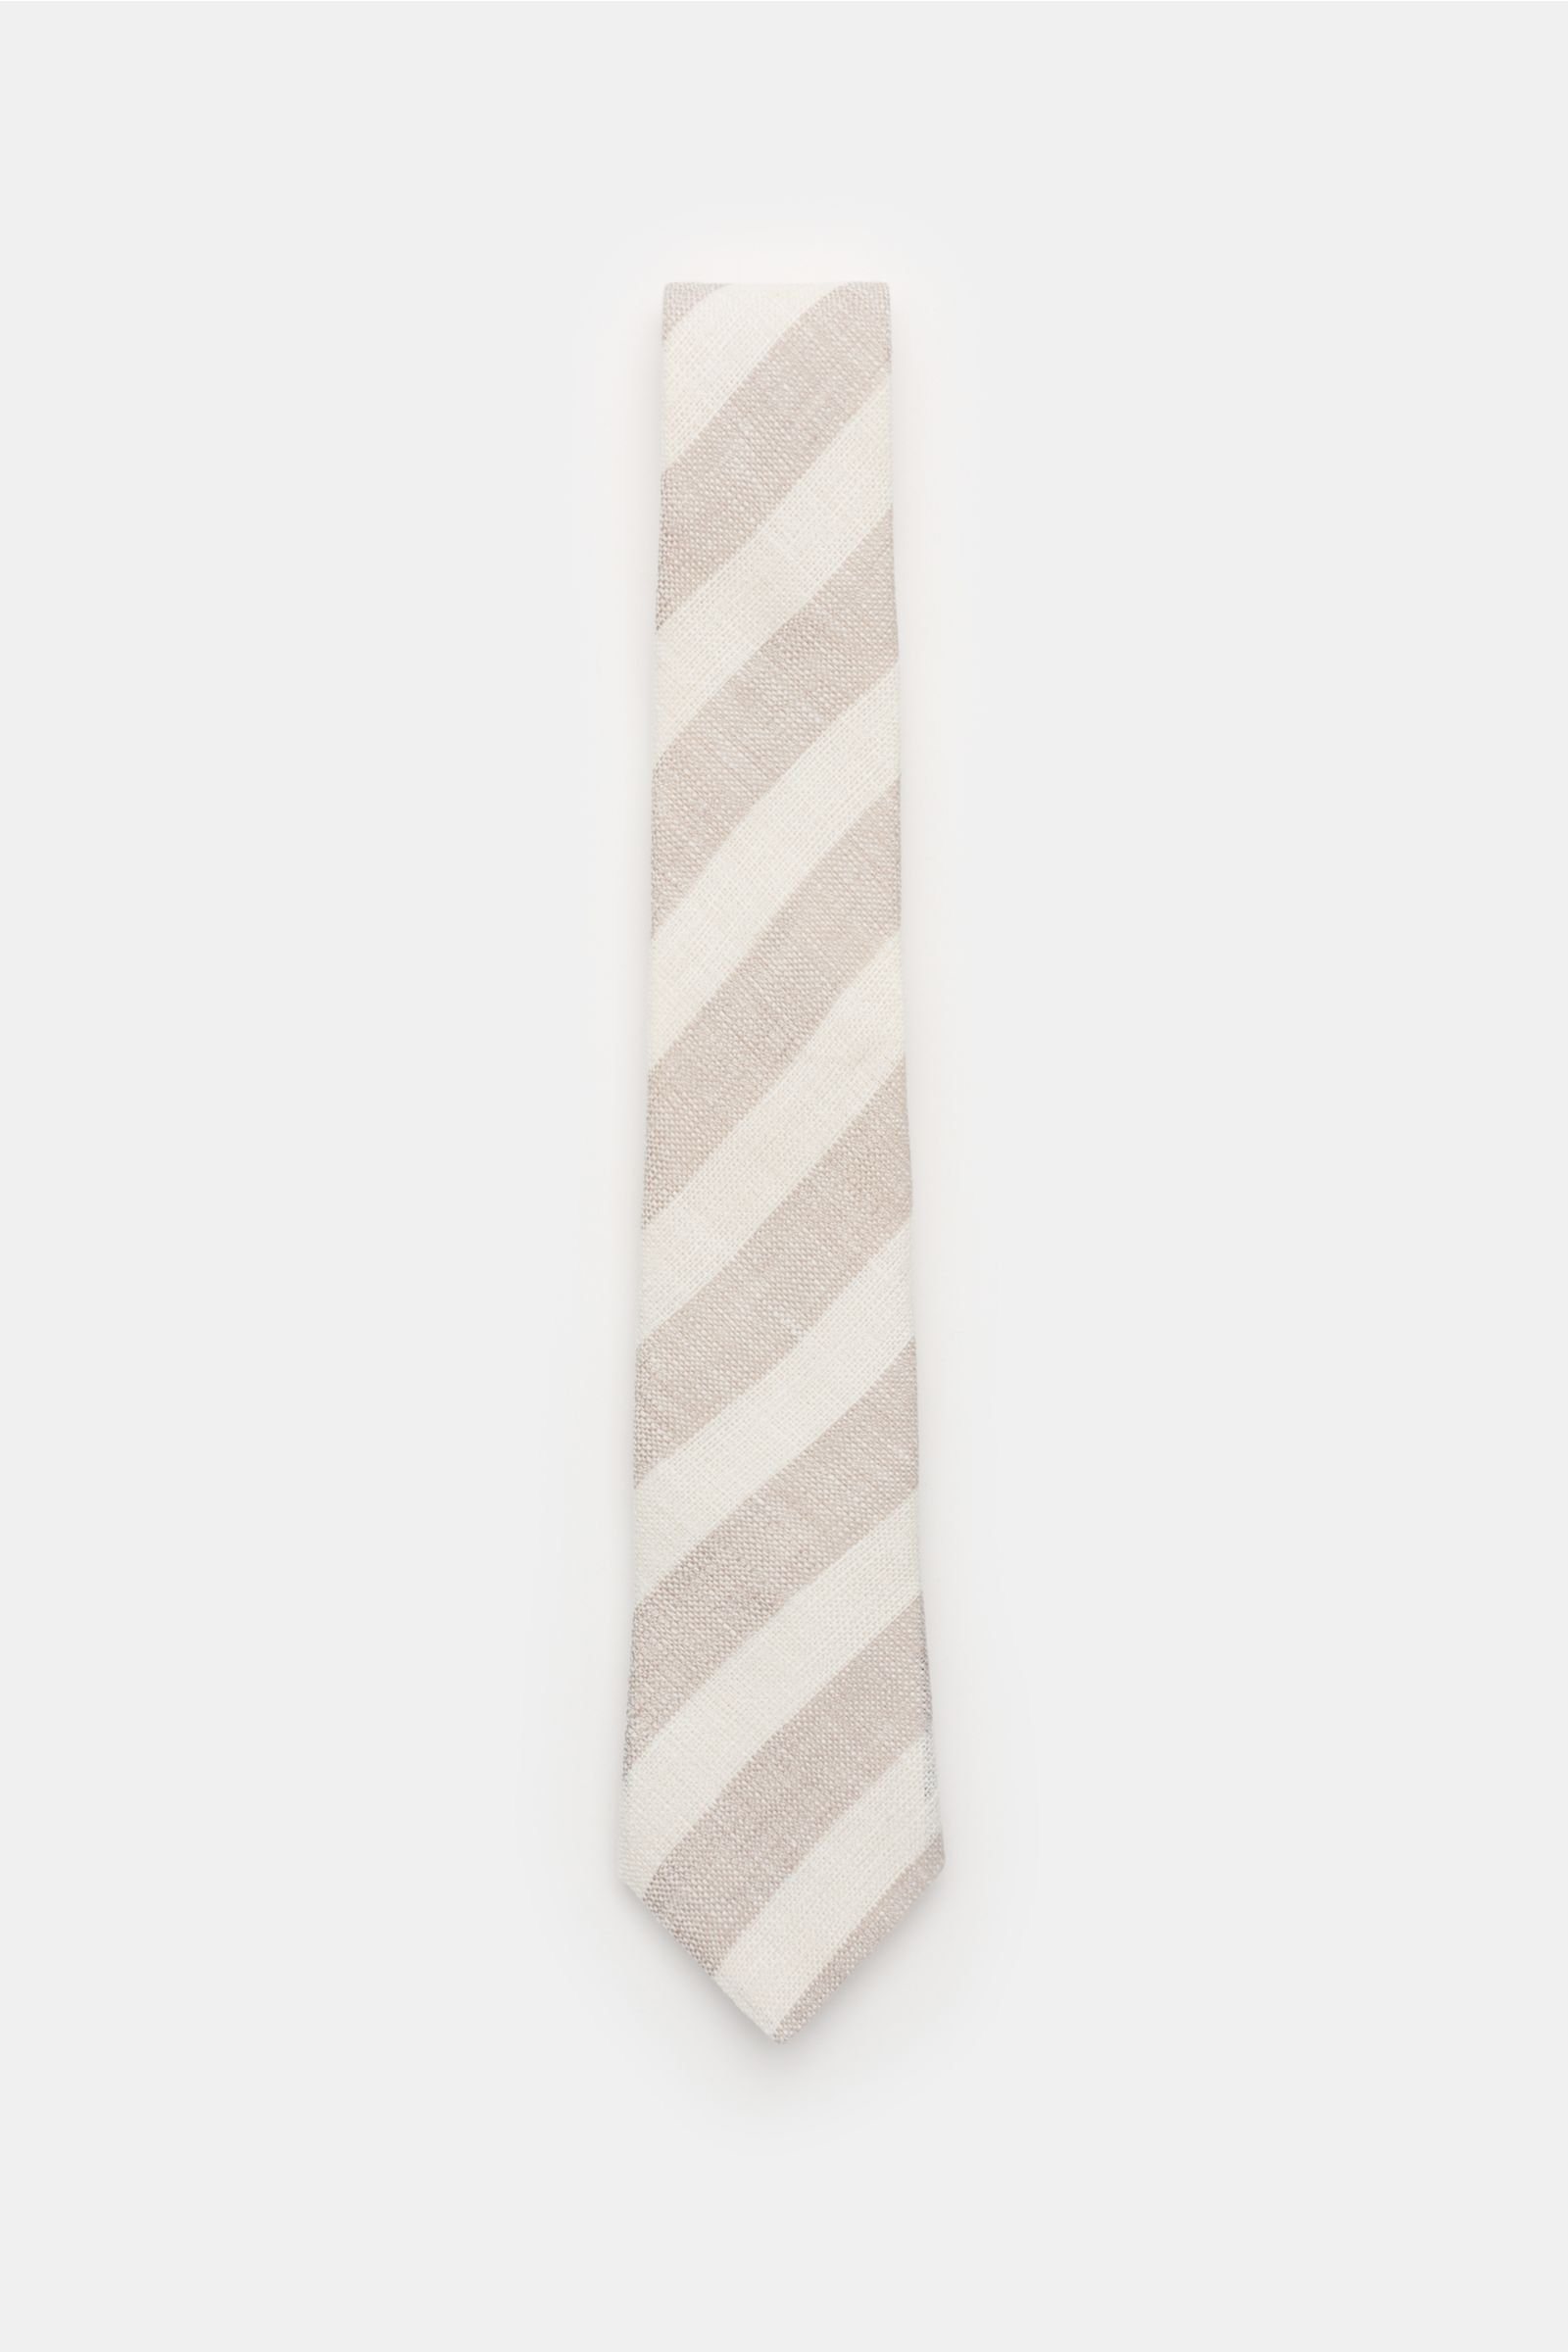 Linen tie beige/cream striped